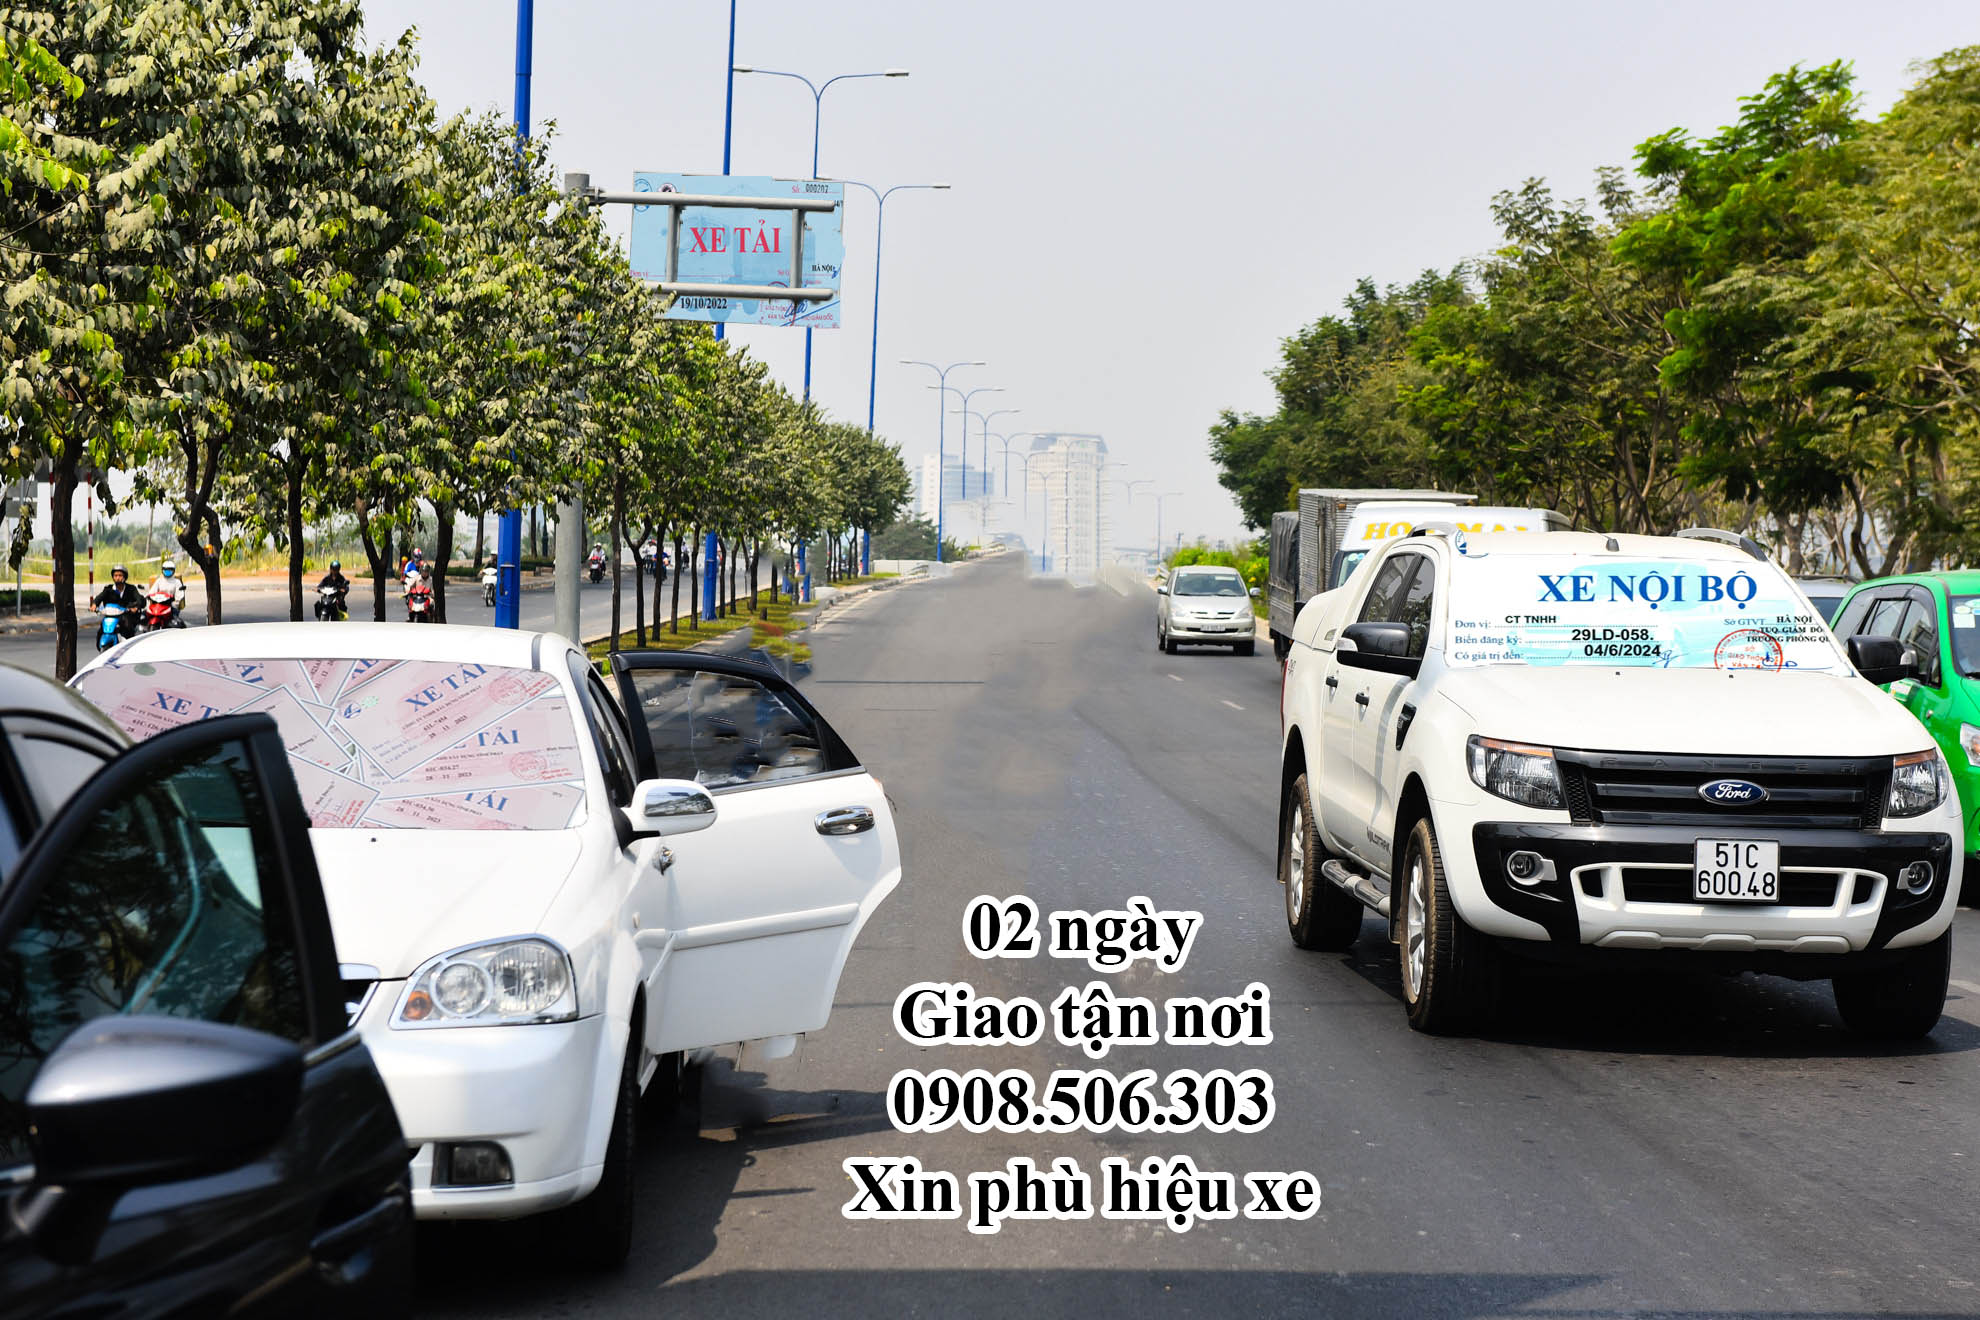 Dịch vụ xin phù hiệu xe tải tại Hà Nội